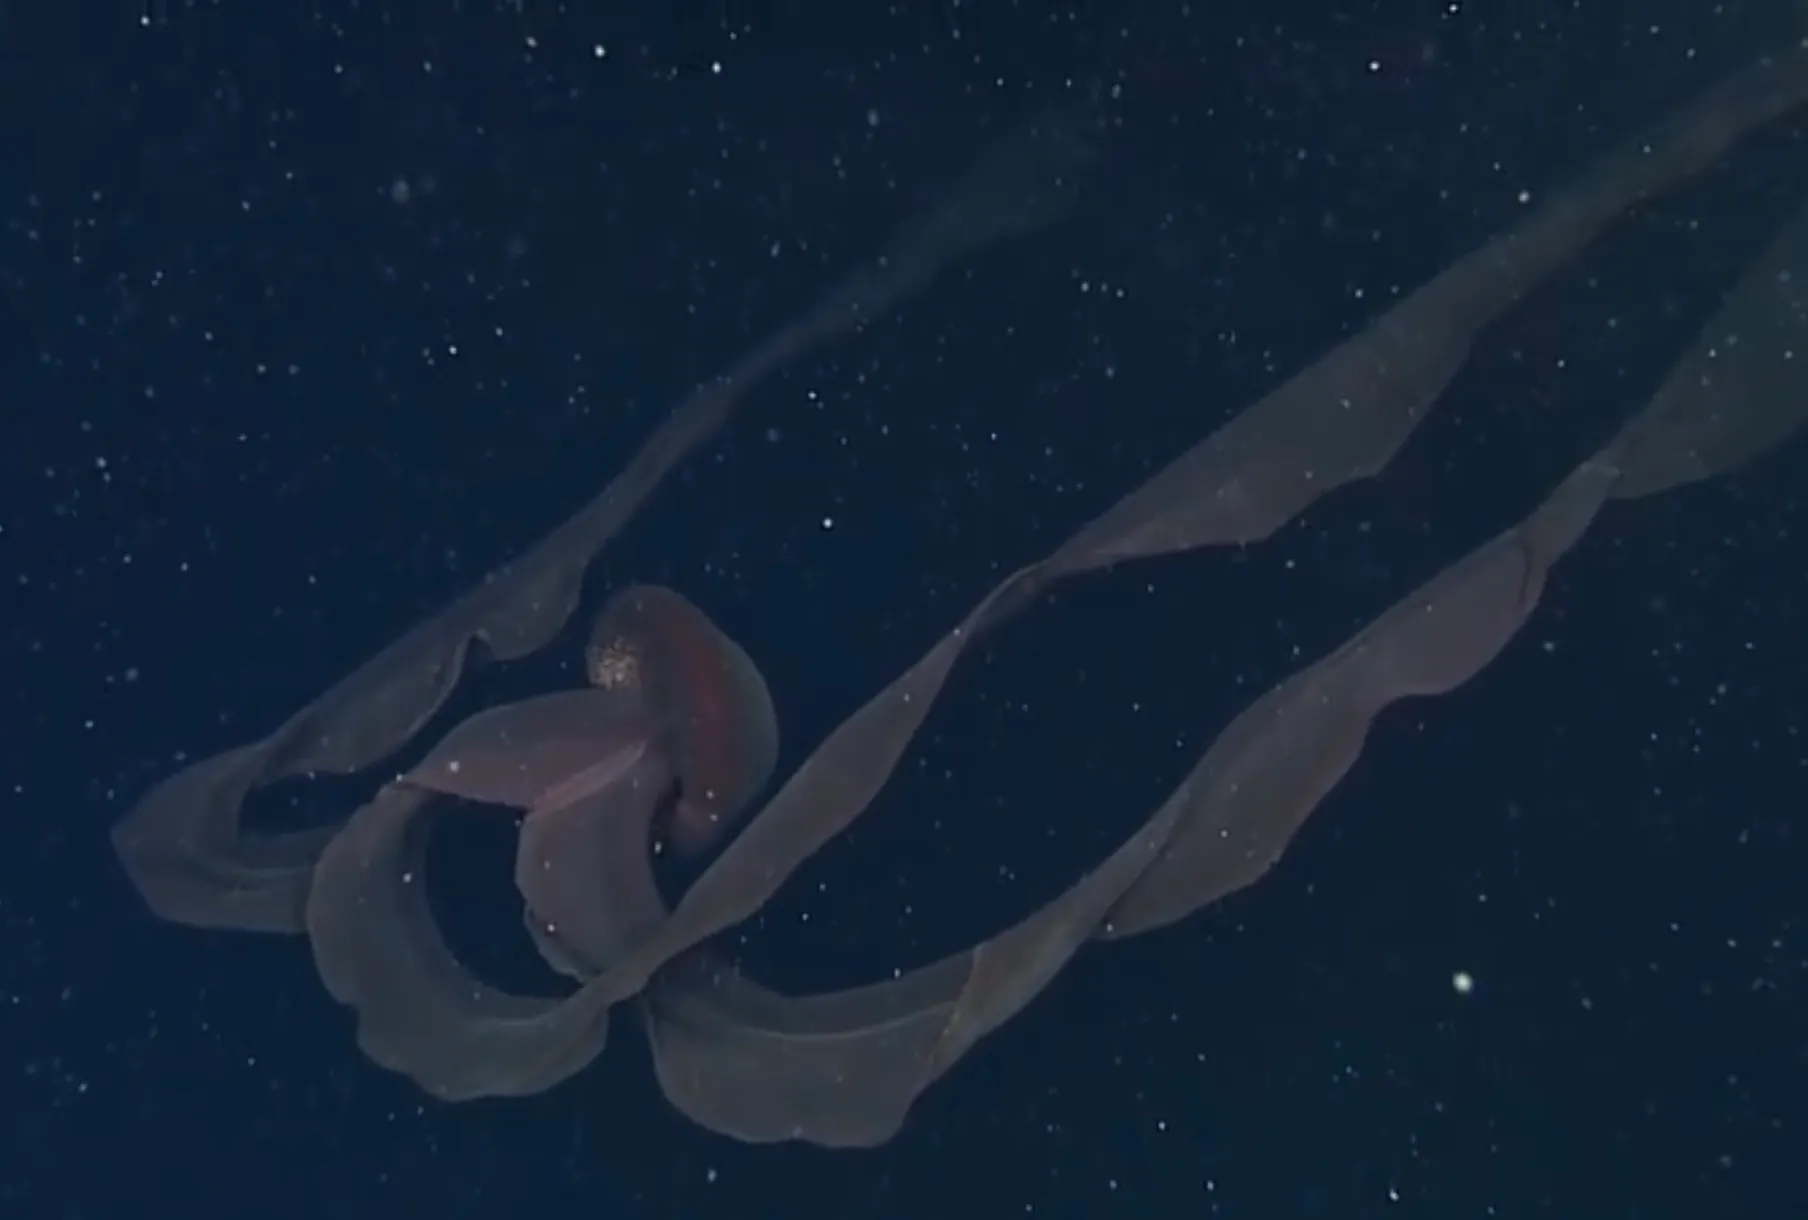 能吓死人的深海恐惧图,五张看完令人毛骨悚然的大海照片